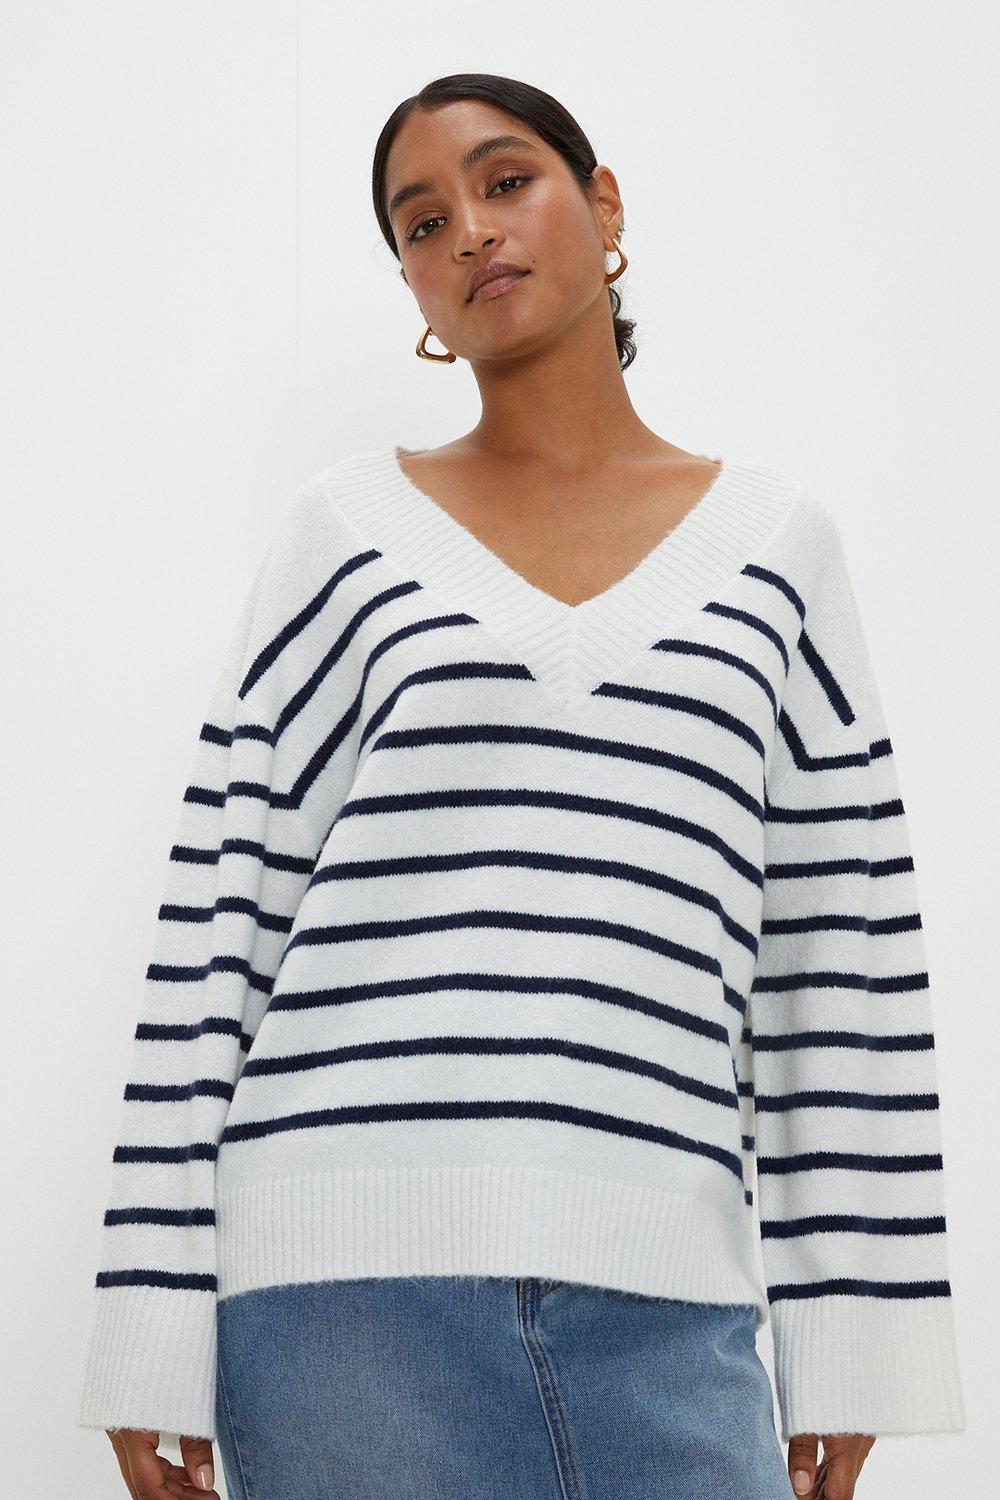 Women's V Neck Stripe Knitted Jumper - white - XL